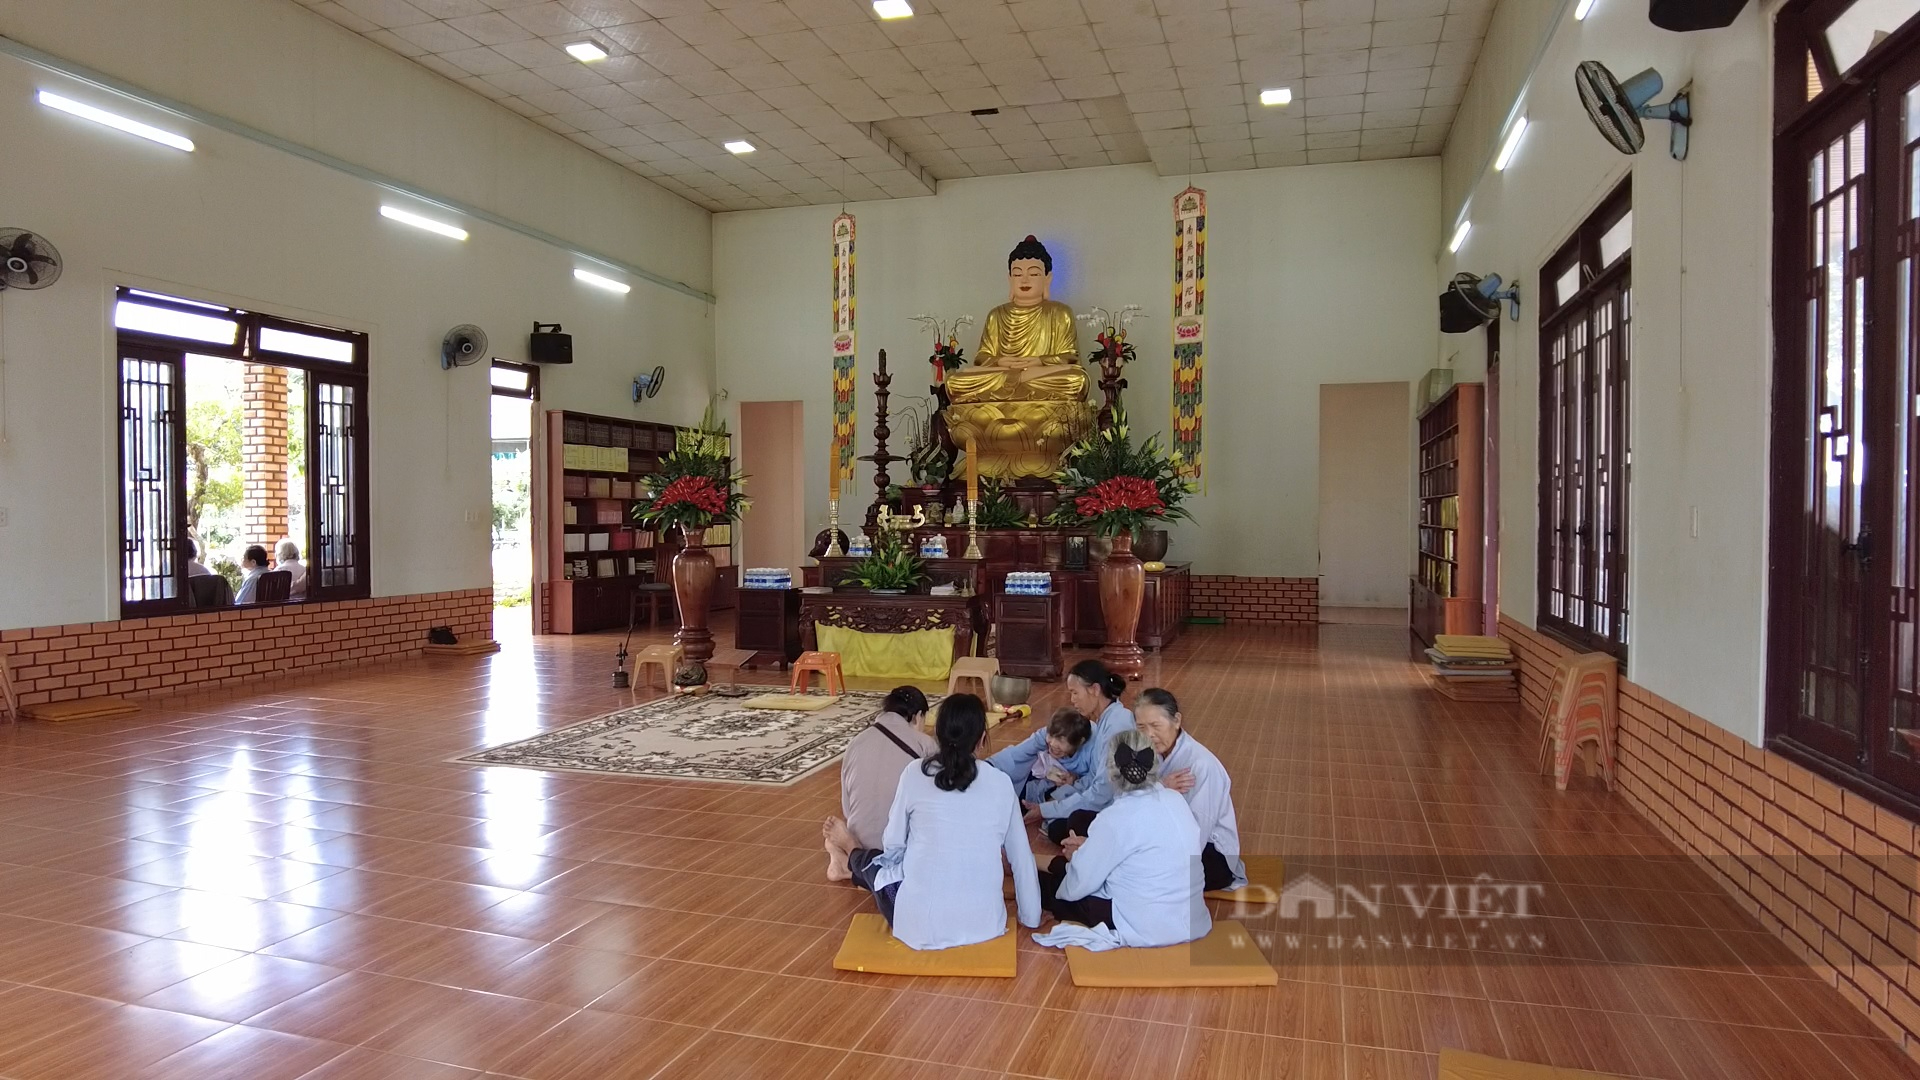 Làng có nhiều chùa nhất Việt Nam tại Lâm Đồng (bài 3): Quản lý chặt chẽ tình hình hoạt động tôn giáo - Ảnh 1.